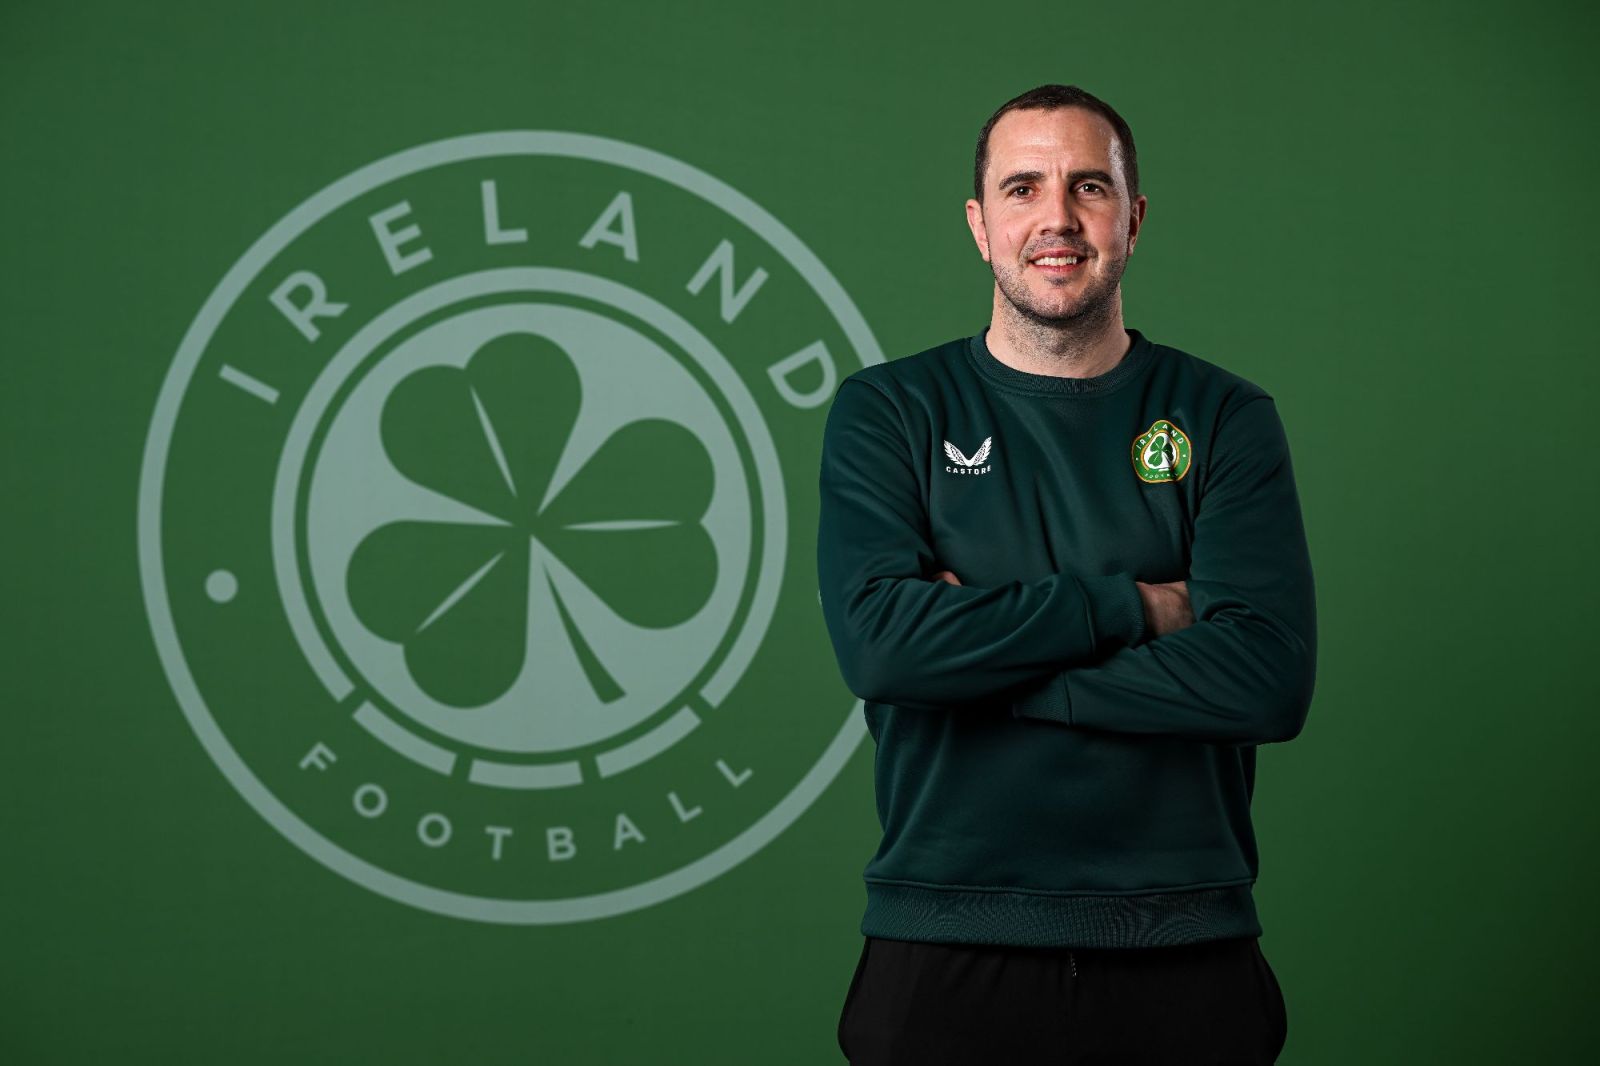 아일랜드 축구협회는 29일(한국시간) 공식 홈페이지를 통해 오셔가 오는 3월 A매치에 아일랜드 남자 축구 국가대표팀을 이끌 임시 감독으로 선임됐다고 발표했다. 아일랜드축구협회